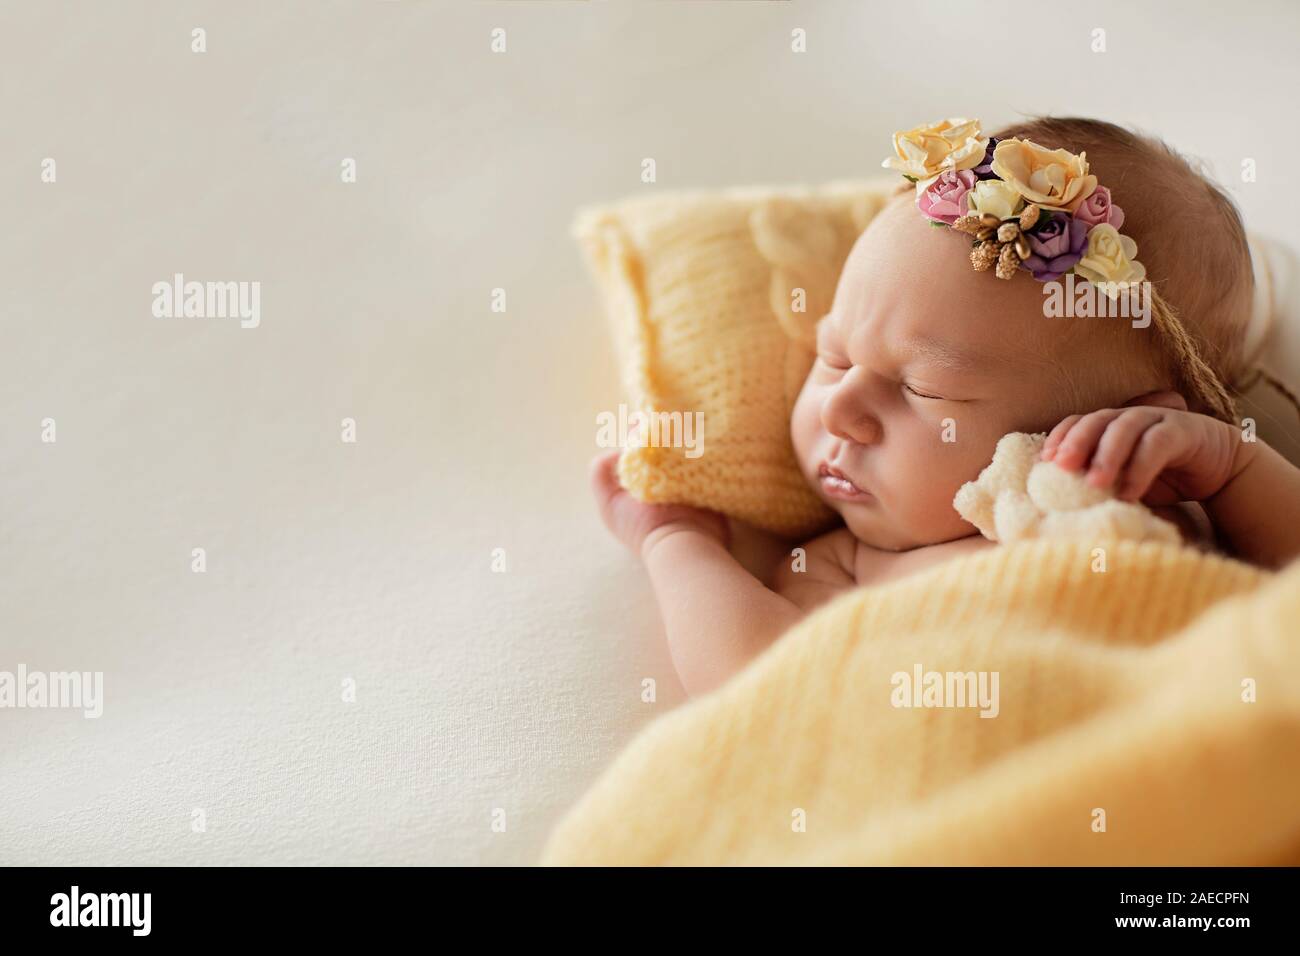 Bébé nouveau-né sur l'oreiller avec une jante jaune sur la tête Banque D'Images